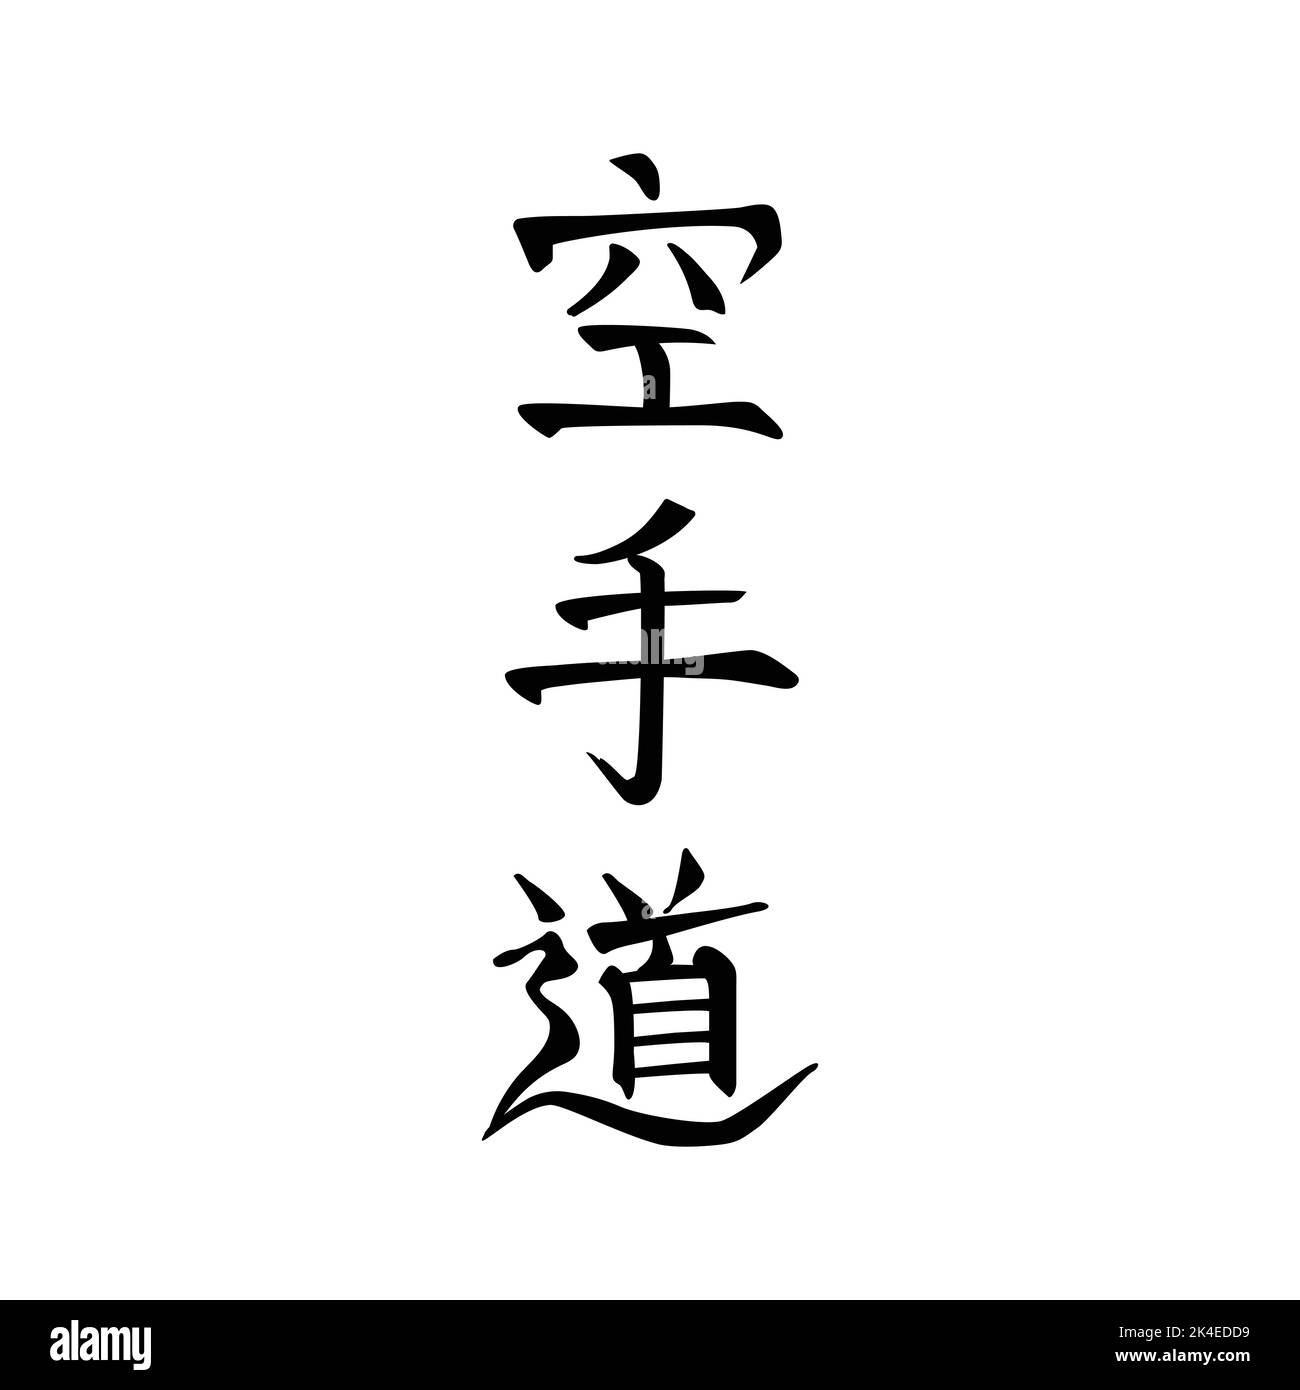 Carate do, Carate, calligraphie japonaise. Caractères stylisés pour l'art martial, noir sur blanc Illustration de Vecteur